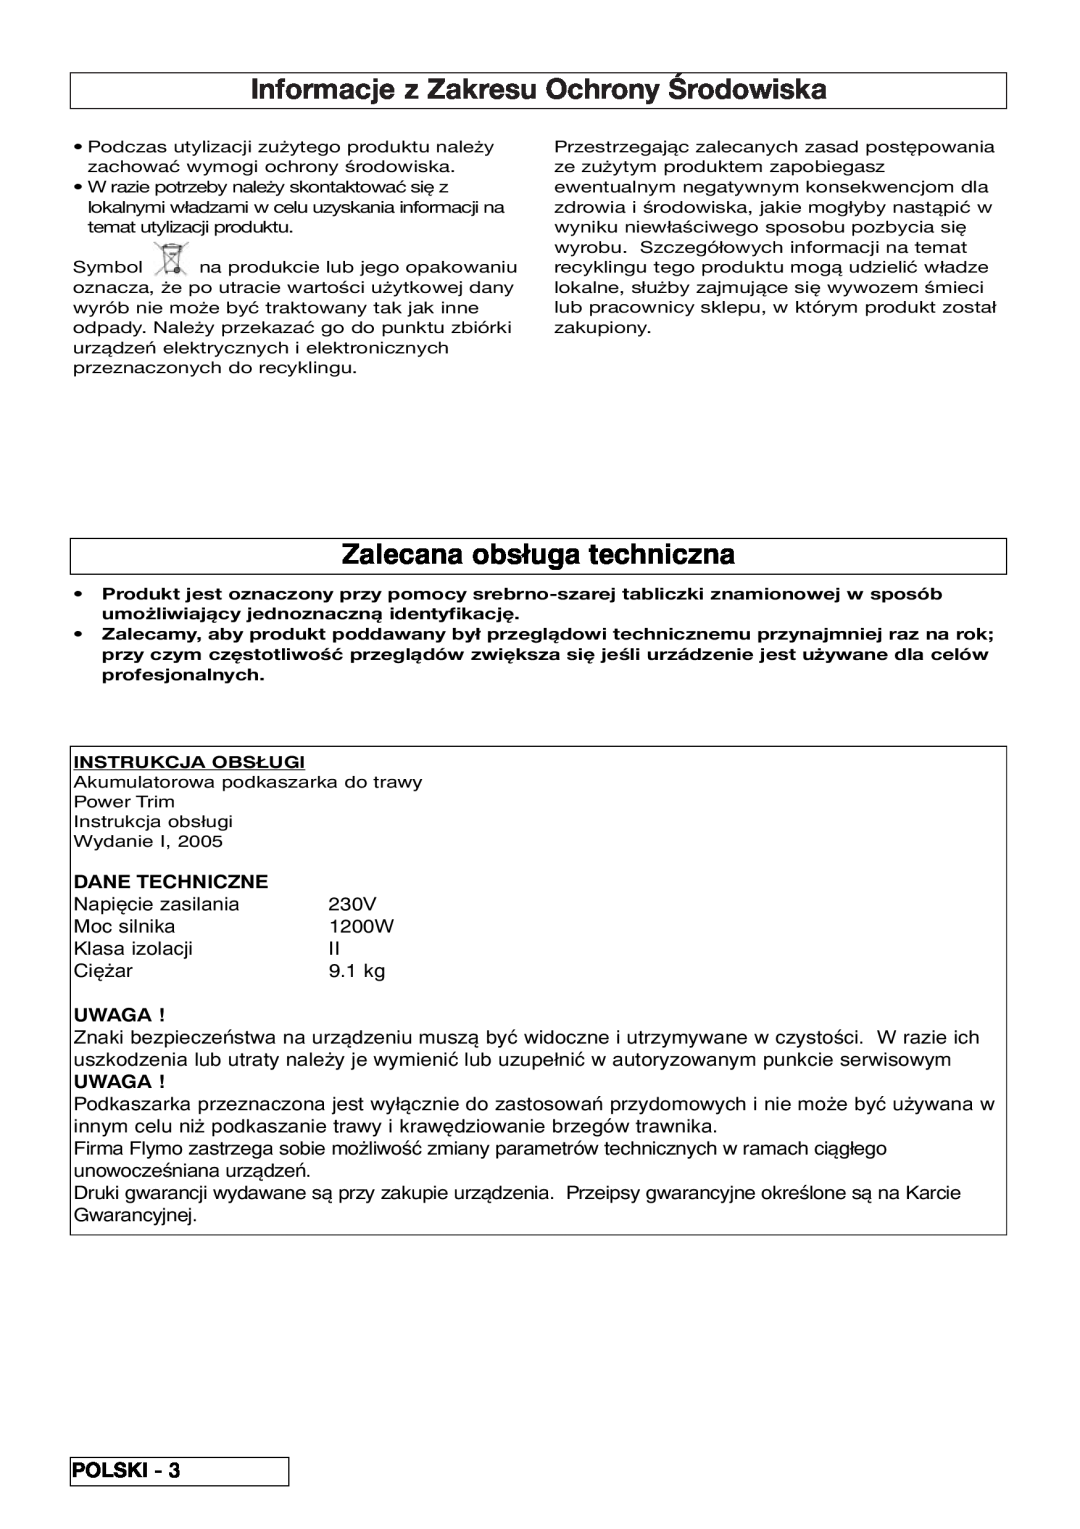 Flymo VM032 manual Informacje z Zakresu Ochrony Środowiska, Zalecana obsługa techniczna, Dane Techniczne, Uwaga, Polski 